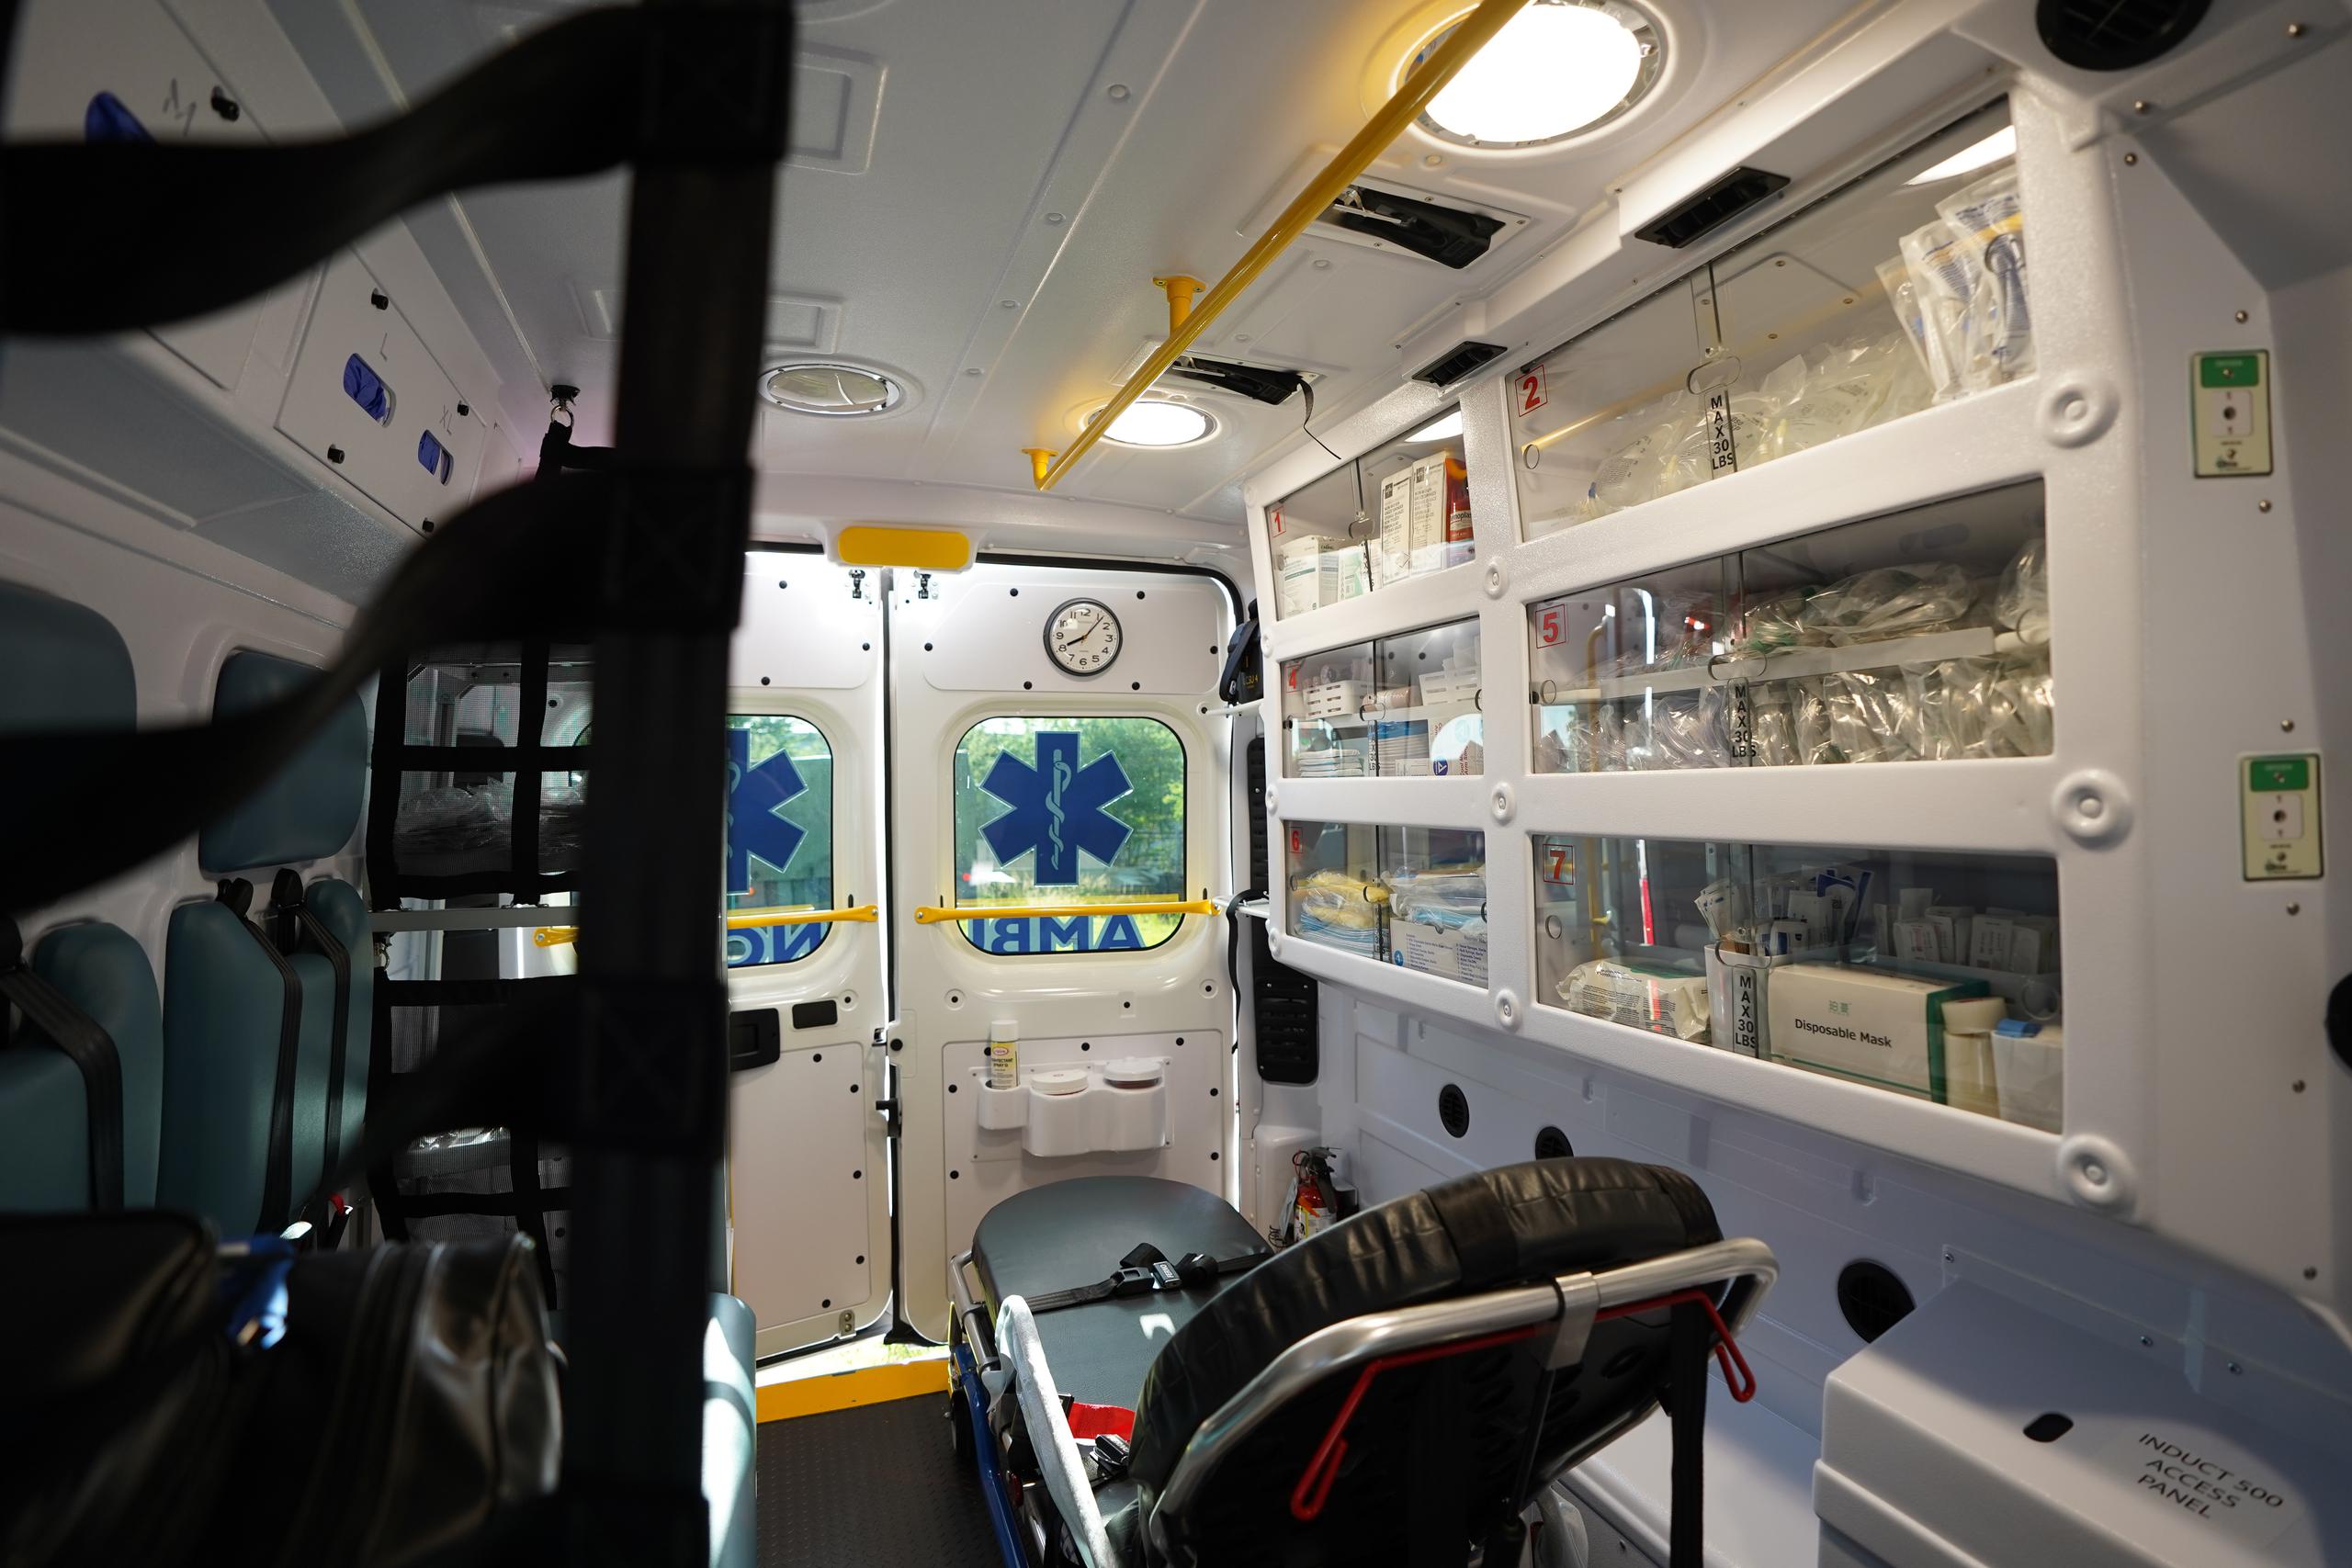 La ambulancia tipo 3 ayudará al manejo seguro y efectivo de circunstancias críticas relacionadas con la obesidad mórbida.